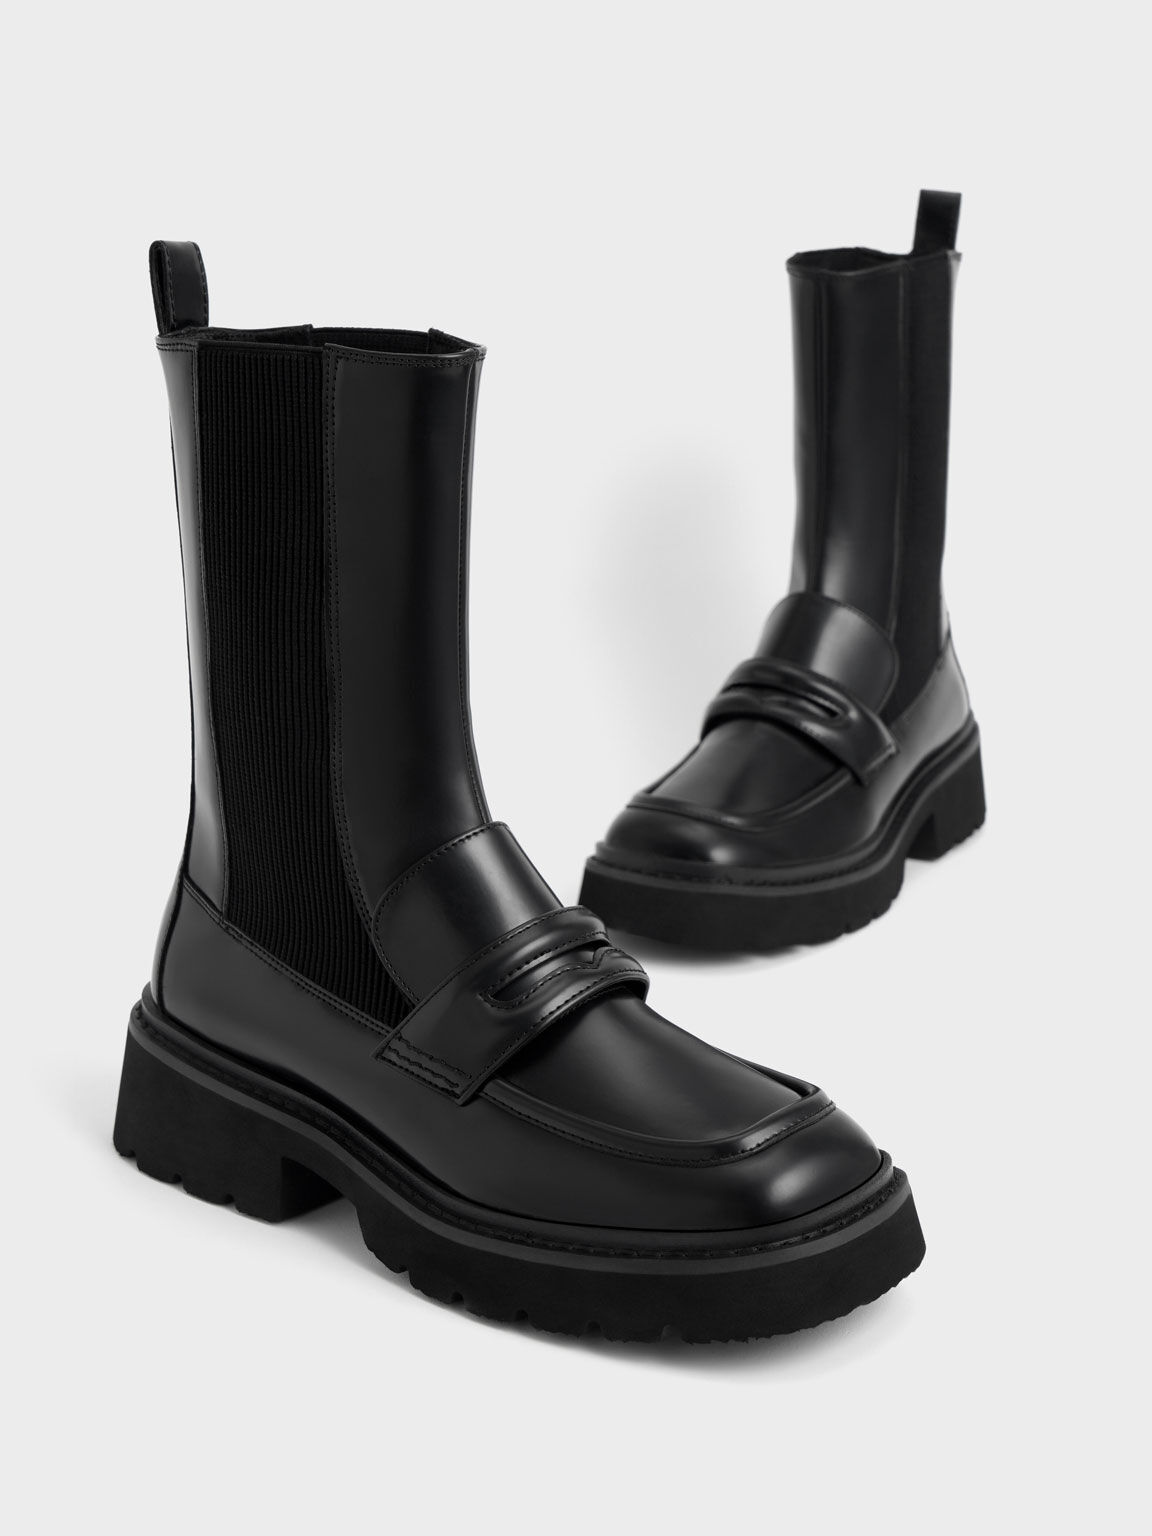 Penny Loafer Chelsea Boots, Black, hi-res